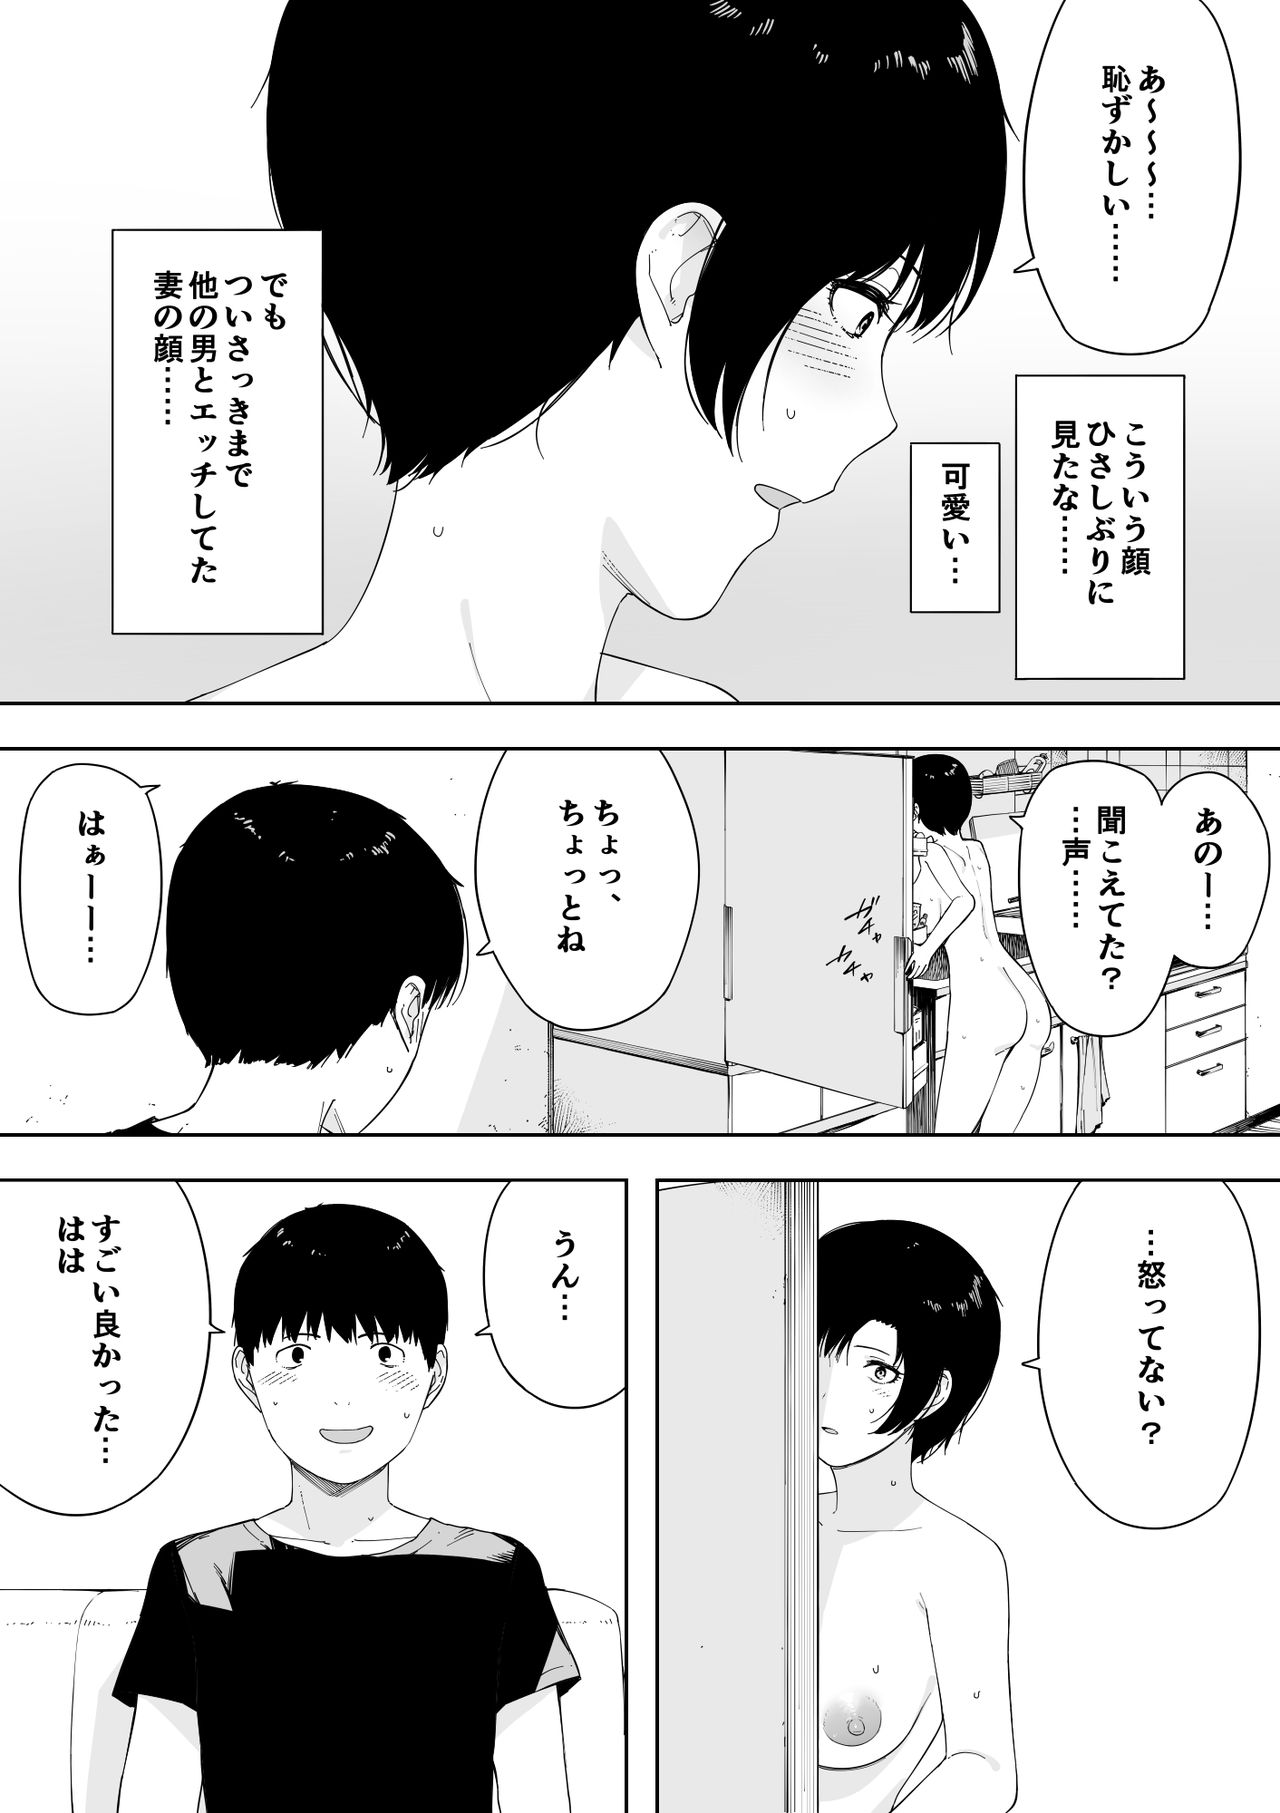 [NT Labo (NT Robo)] Aisai, Doui no Ue, Netorare 4 ~Iwashita-ke no Haha~ page 29 full